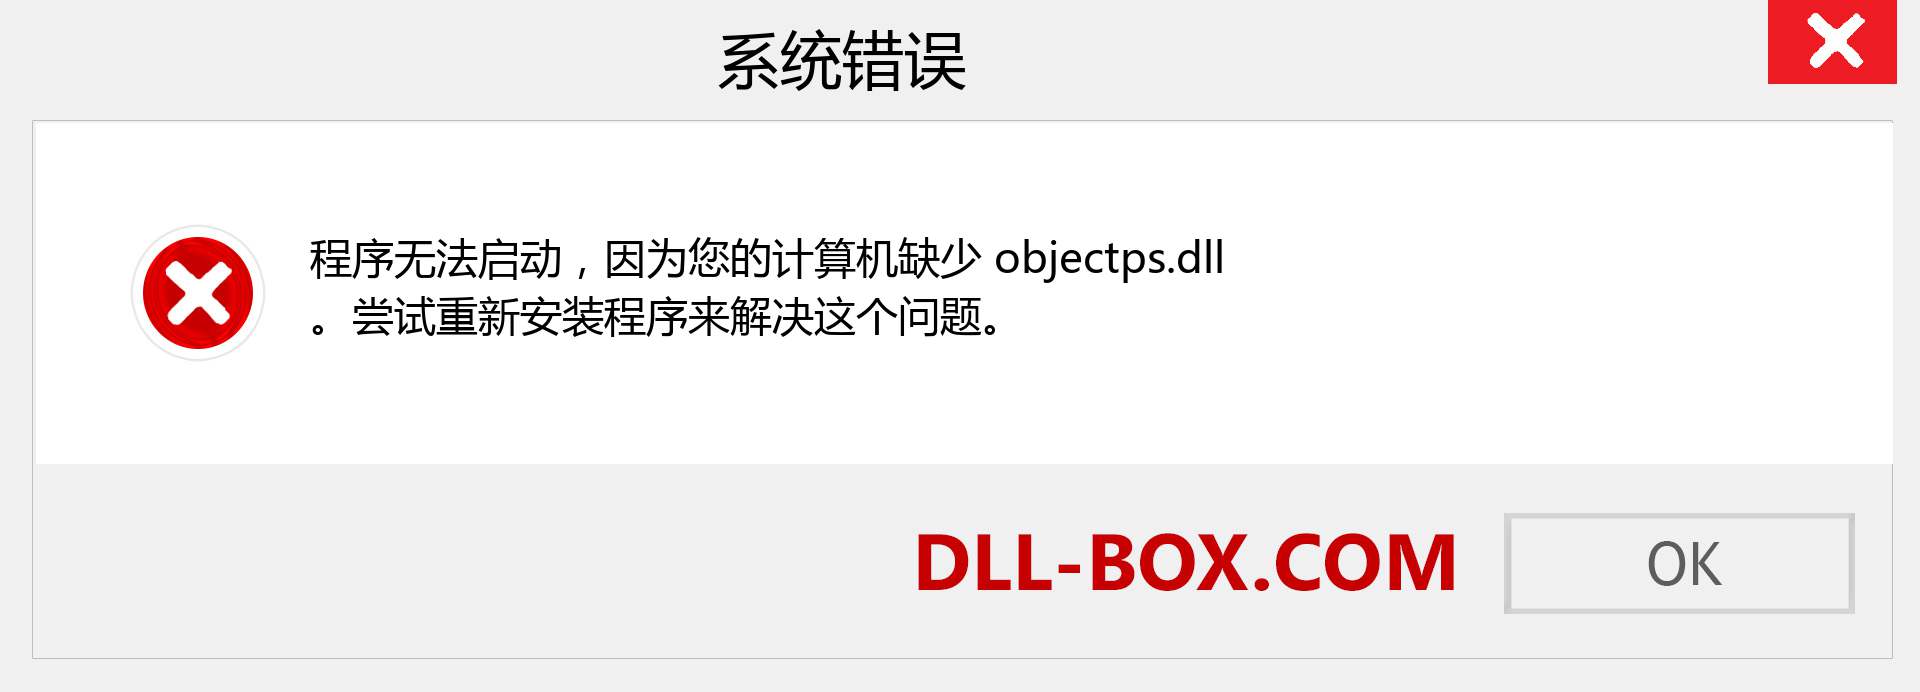 objectps.dll 文件丢失？。 适用于 Windows 7、8、10 的下载 - 修复 Windows、照片、图像上的 objectps dll 丢失错误